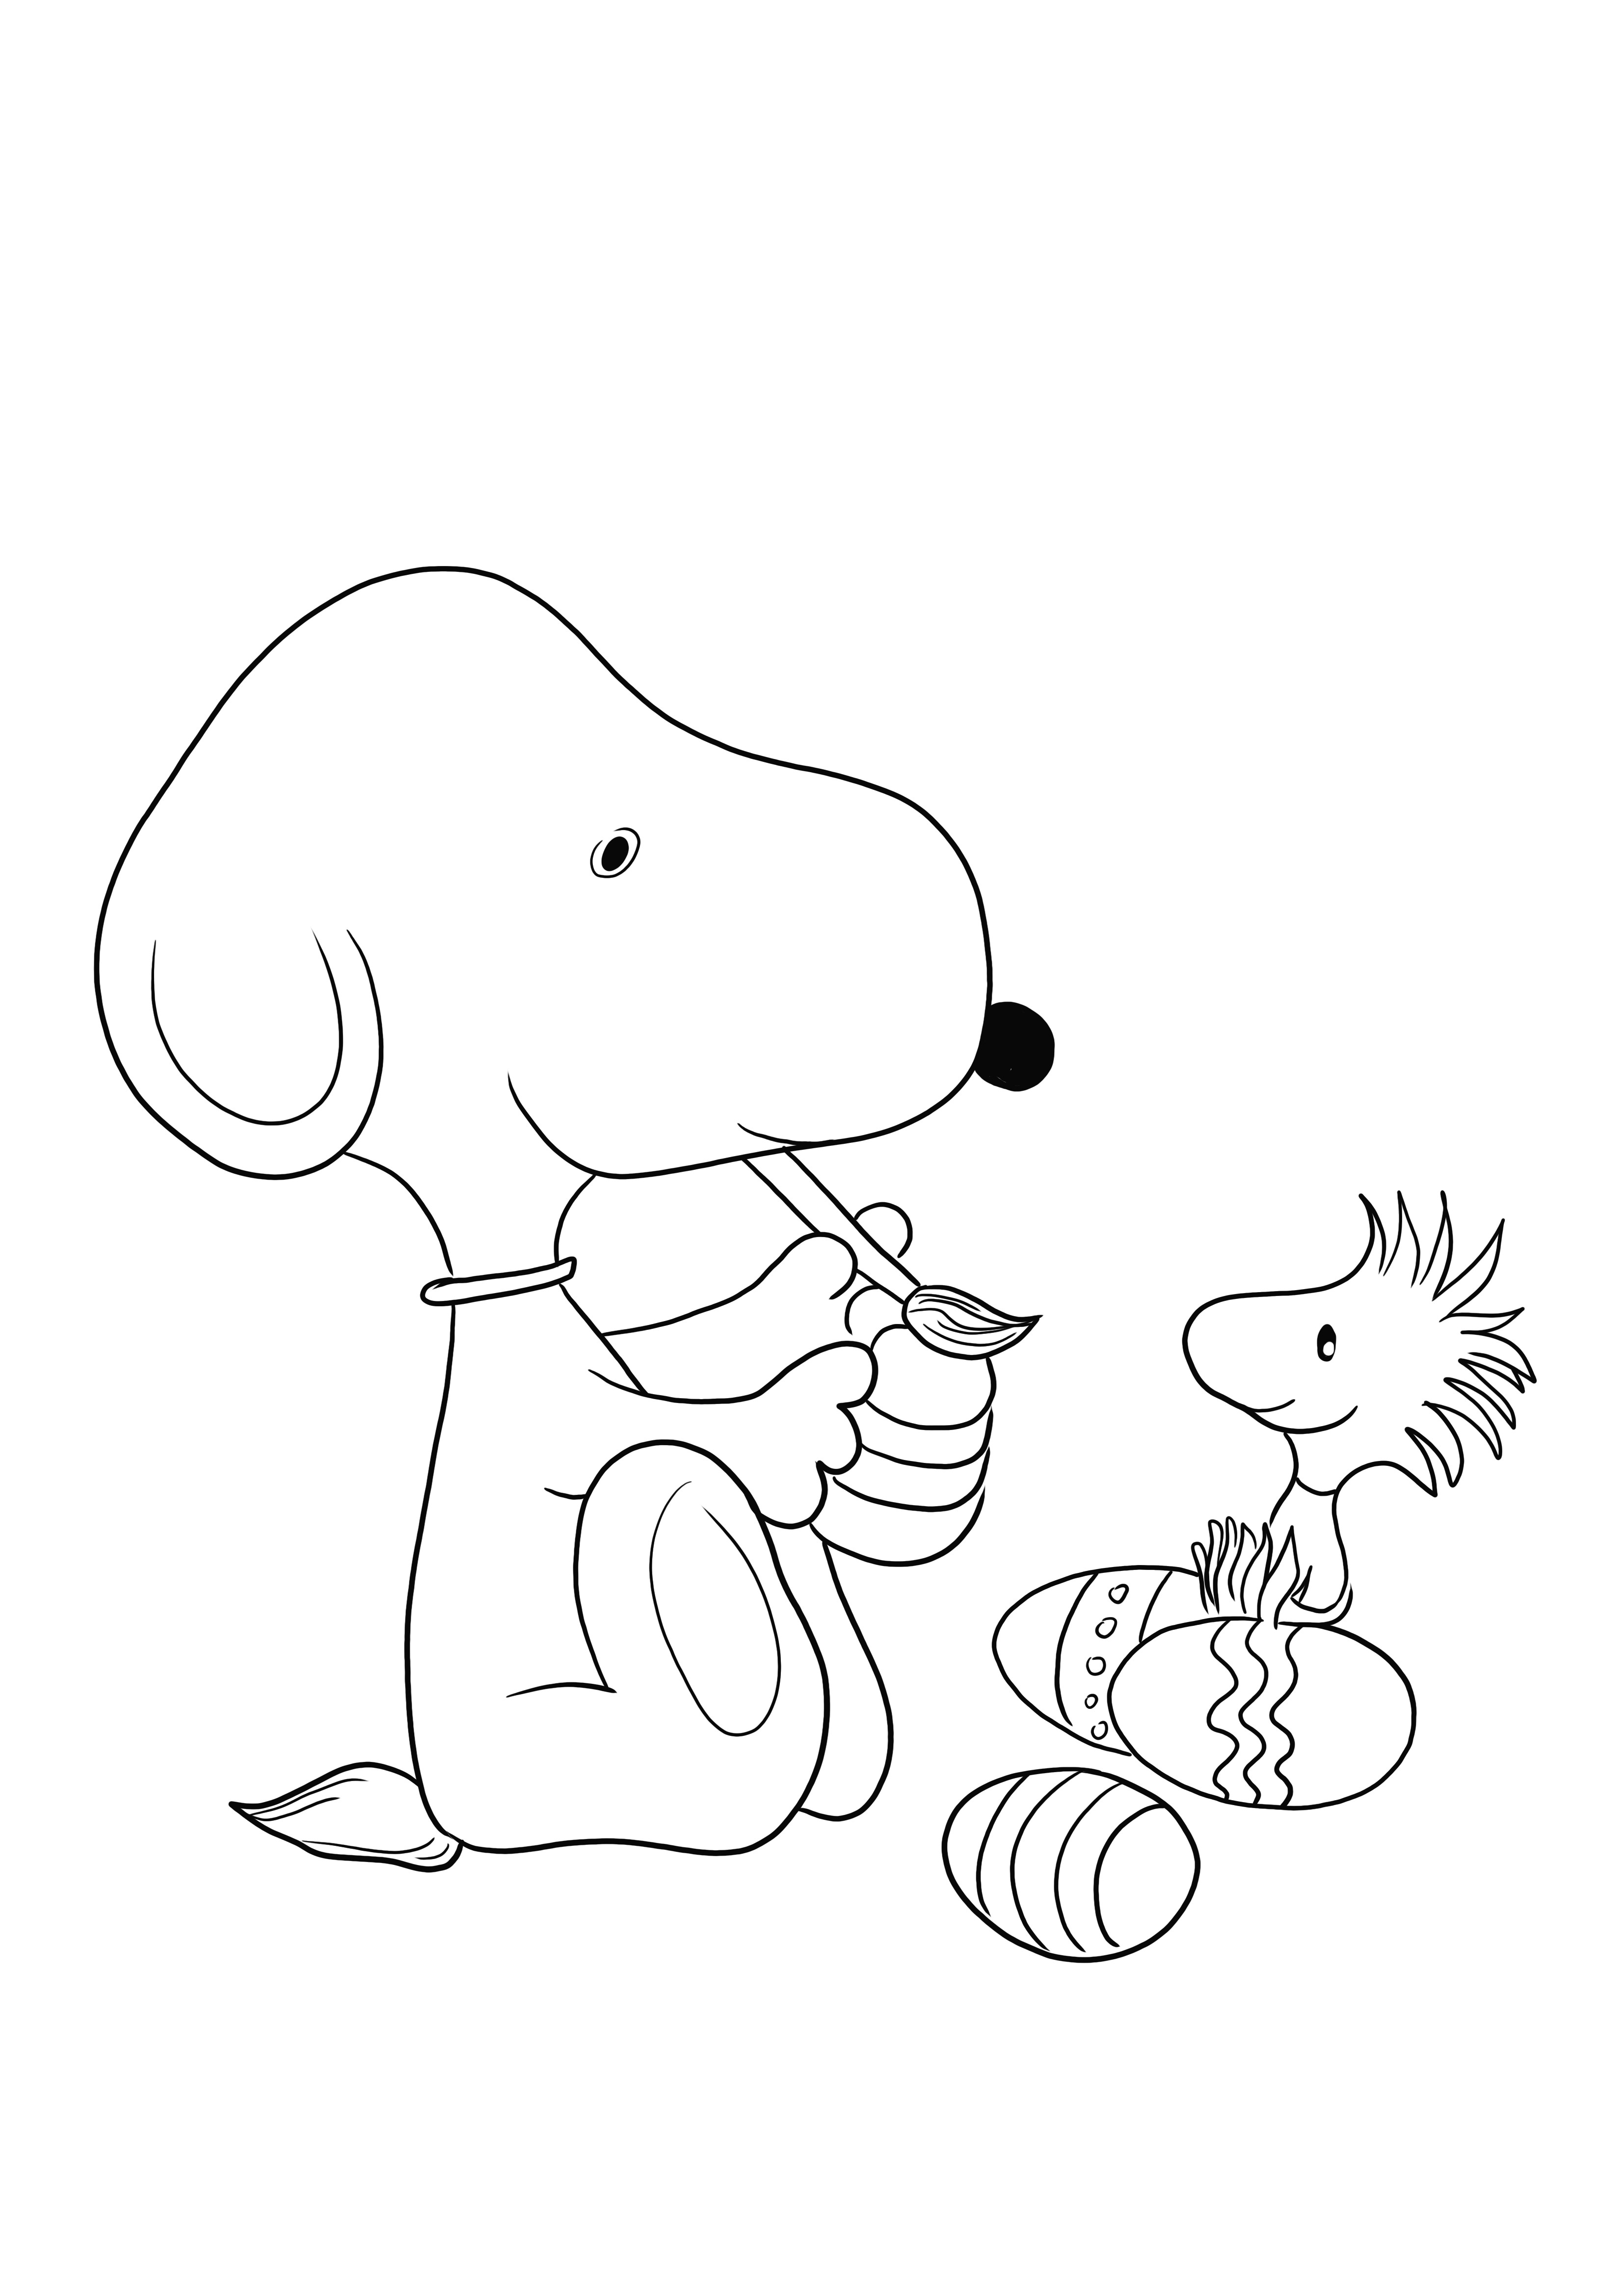 Snoopy z kreskówki Peanuts maluje jajko wielkanocne do pobrania za darmo i pokolorowania obrazu